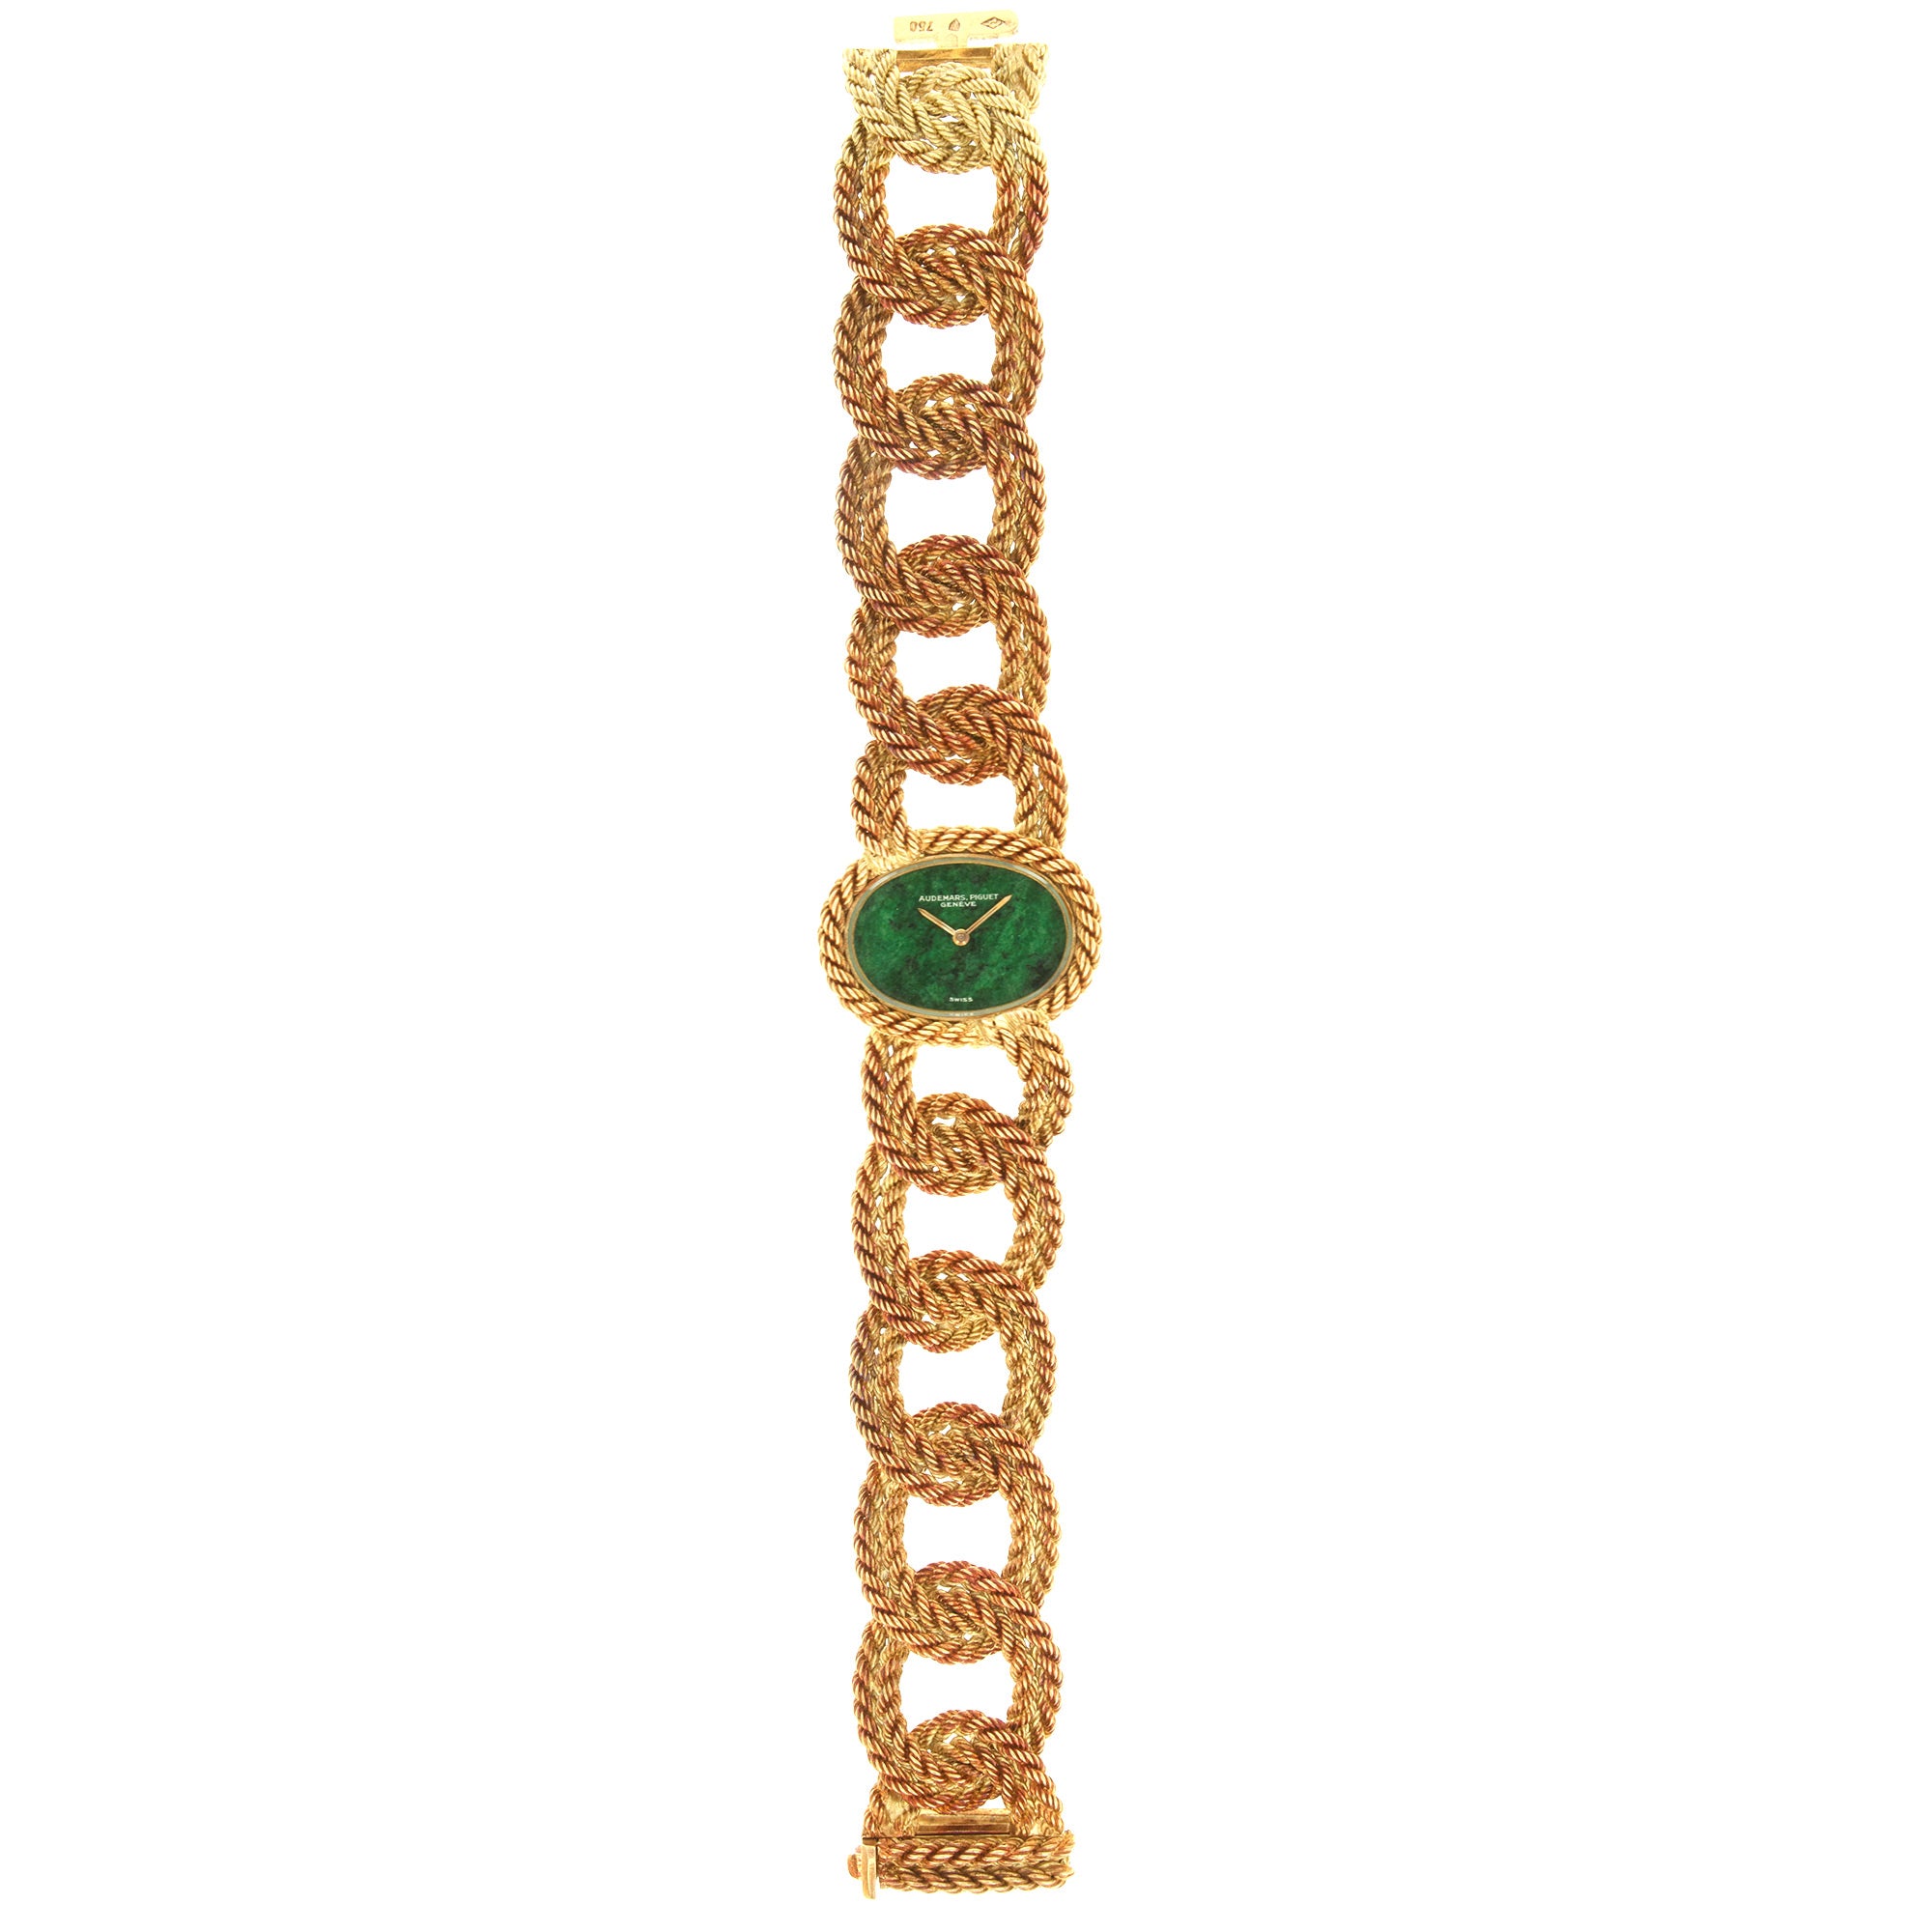 Audemars Piguet - Audemars Piguet Yellow Gold Braided Bracelet Watch, 1960s - The Keystone Watches